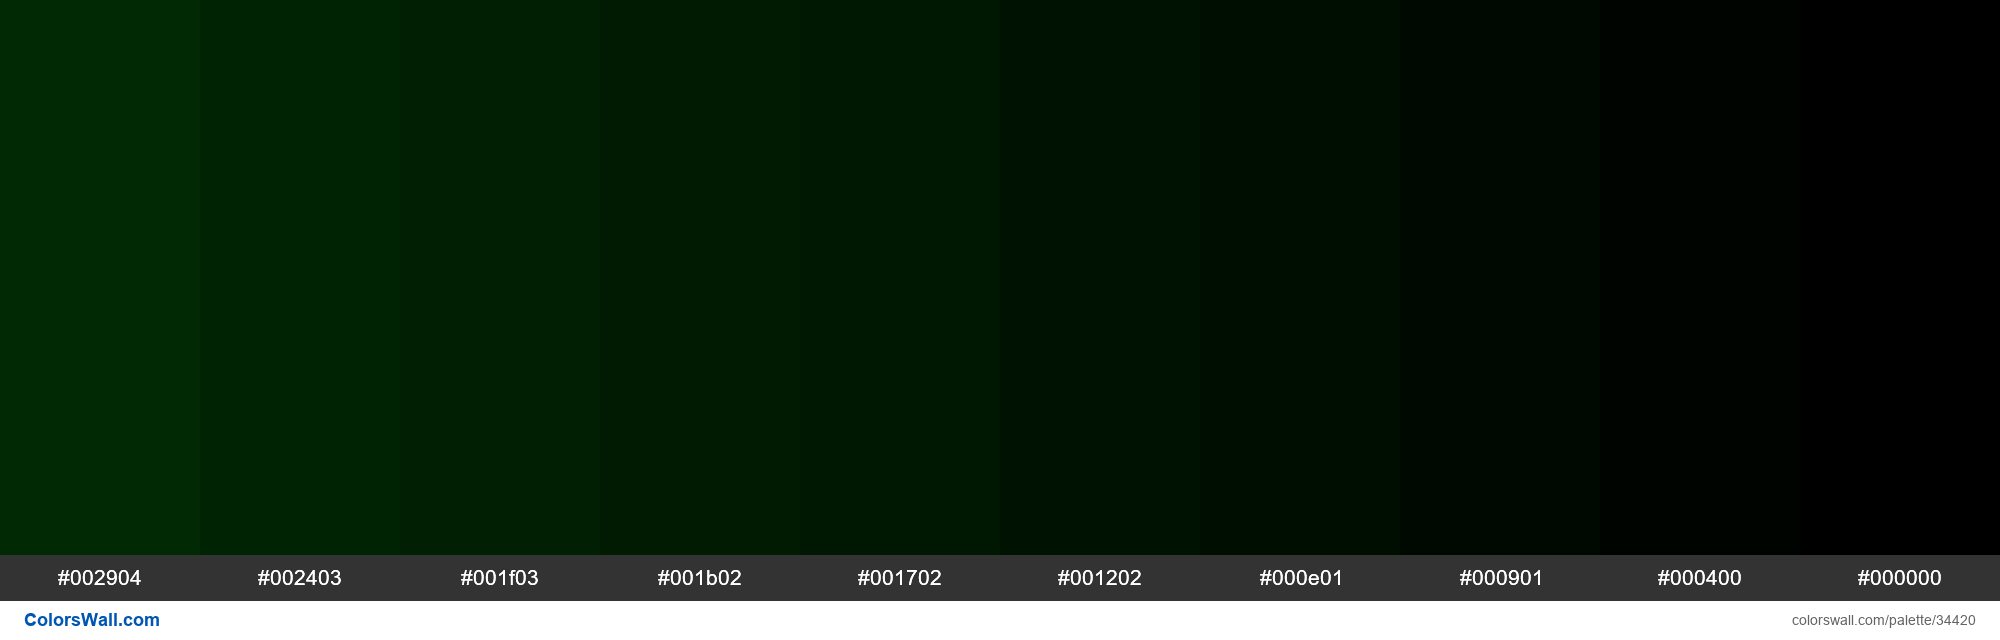 Код изумрудного цвета. Зеленый 008000. Оттенки зеленого hex. Зеленый цвет RGB. Зелёный тёмный цвет RGB.